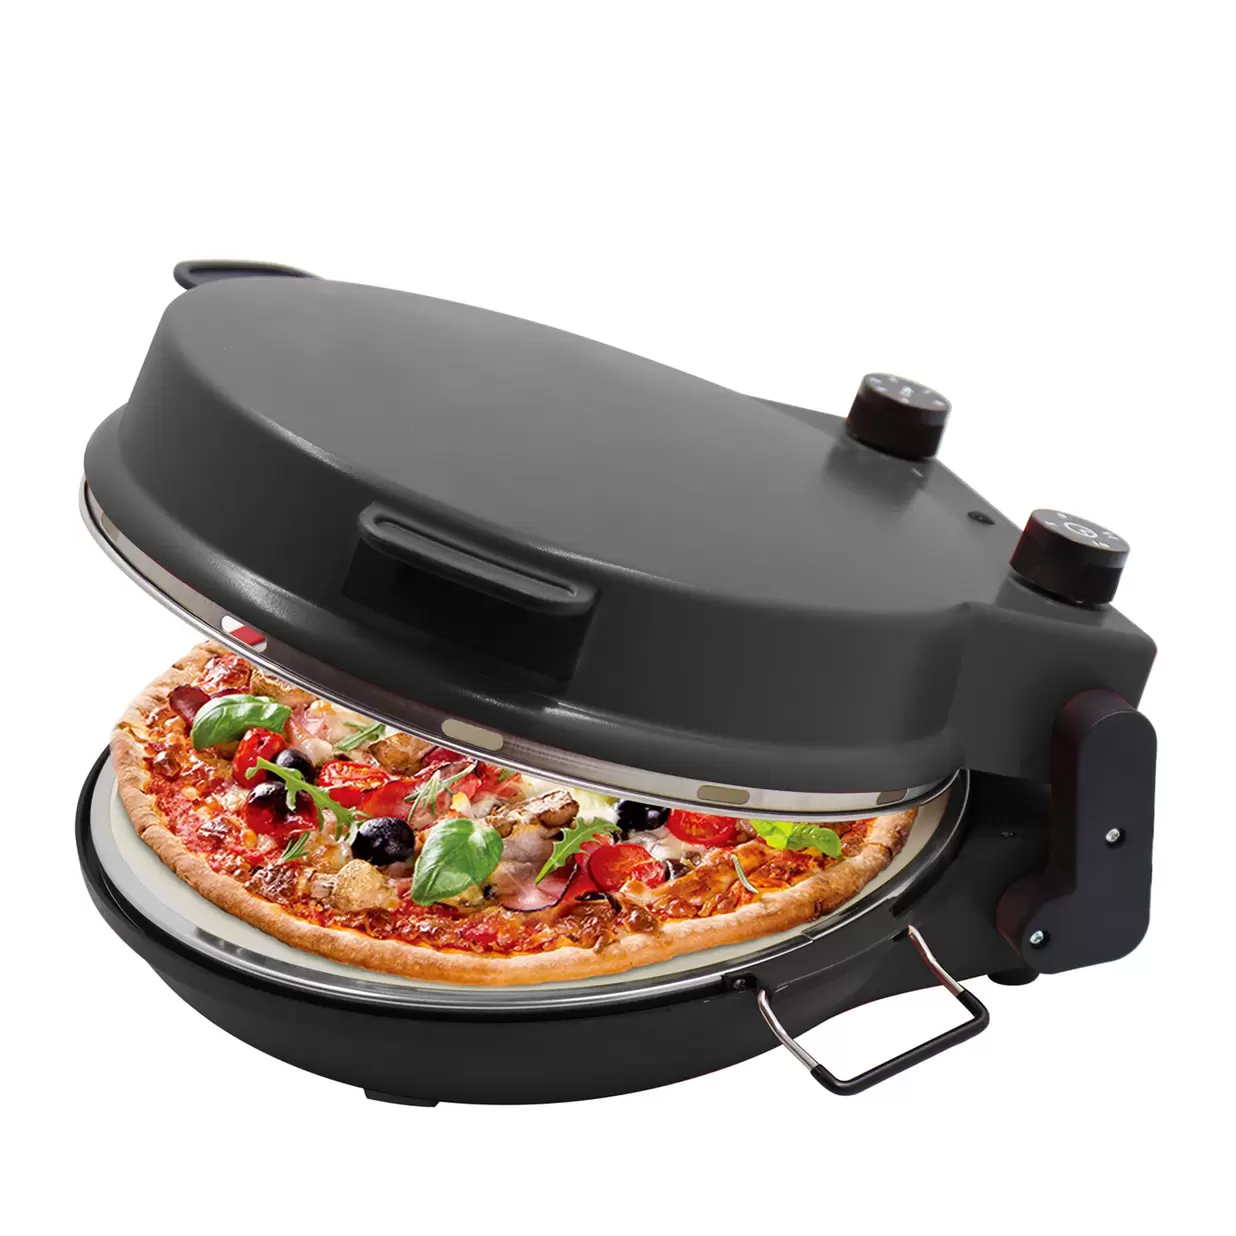 HÂWS Store Okseø pizzaovn på tilbud til 599 kr. hos Sinnerup